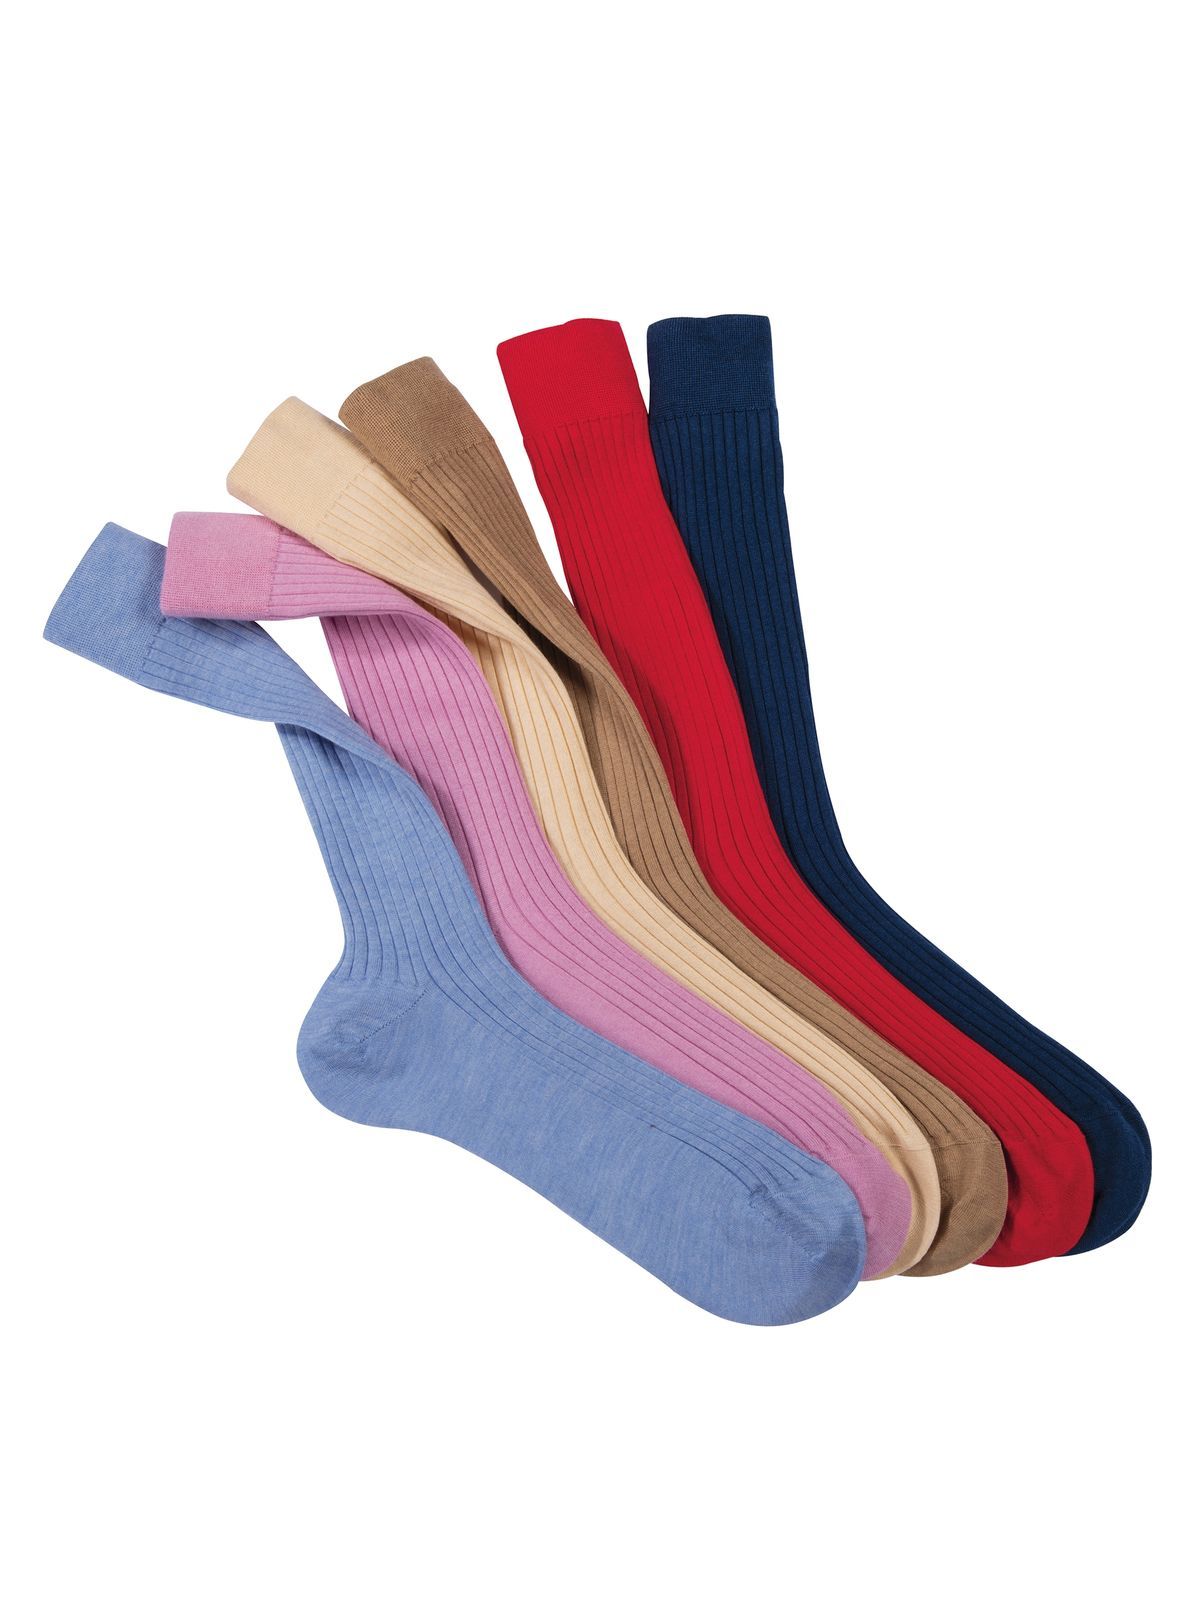 https://cdn.mausandhoffman.com/prod_images/1200/cashmere-and-silk-socks-SOX1-135278-1.jpg